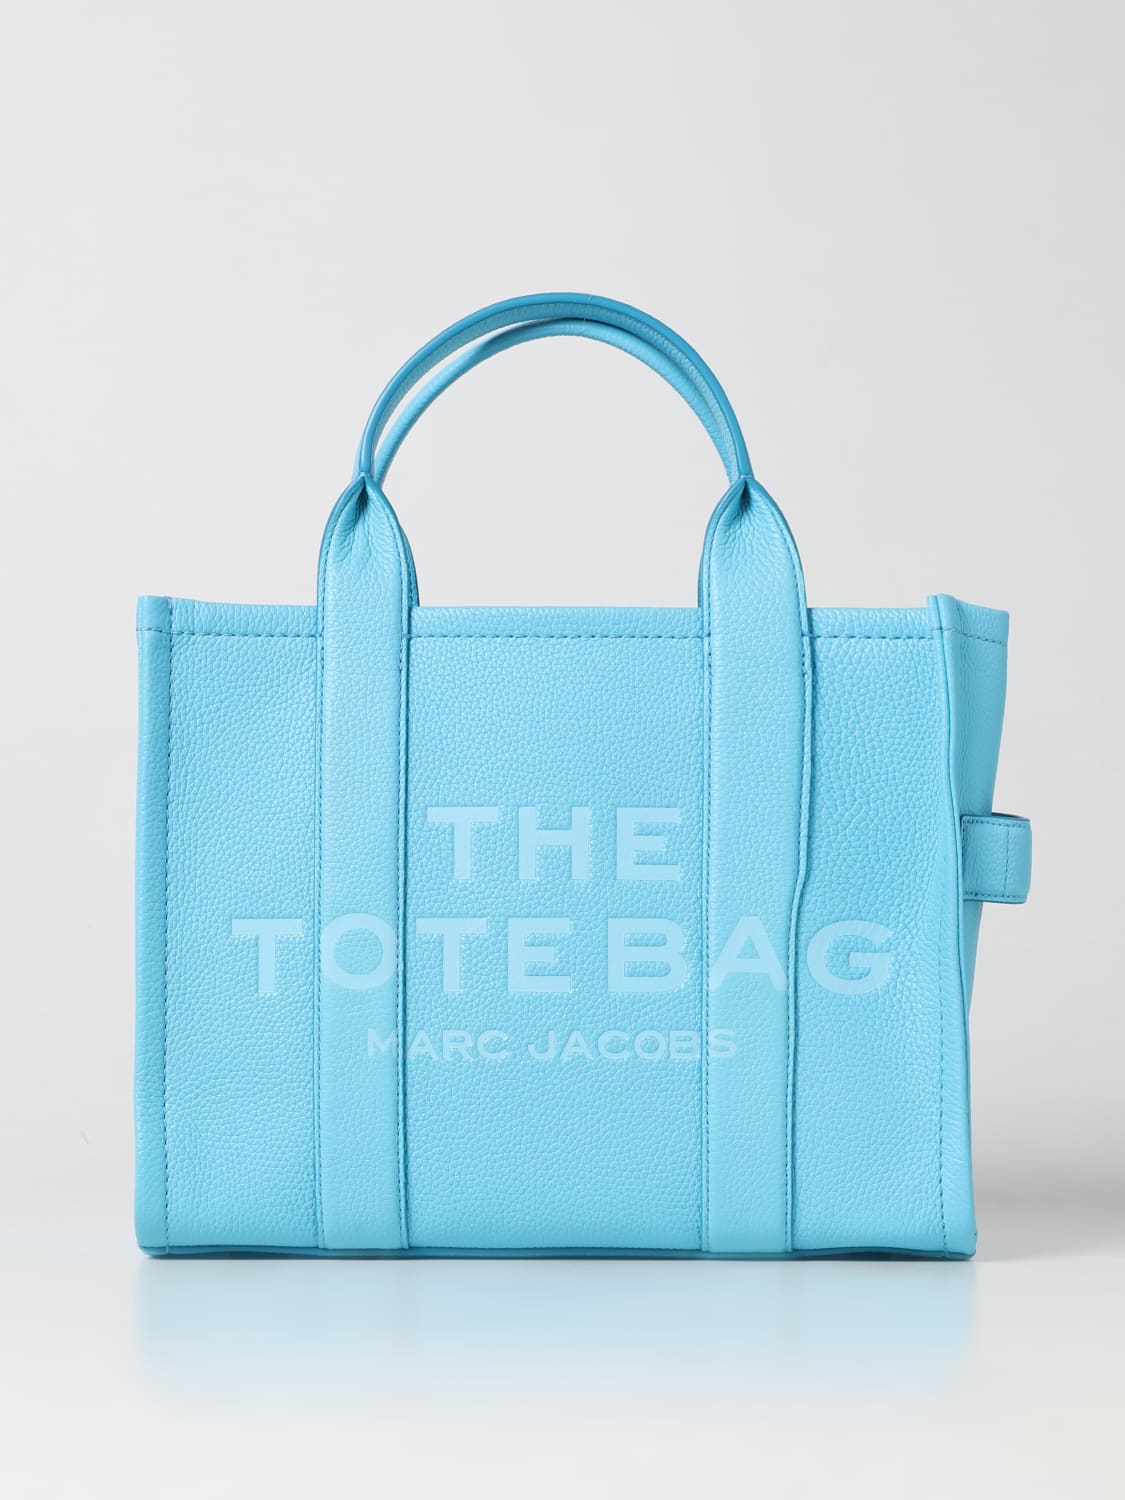 MARC JACOBS BORSE TOTE: Borsa The Tote Bag in pelle a grana, Borse Tote  Marc Jacobs donna - H004L01PF21 Blue